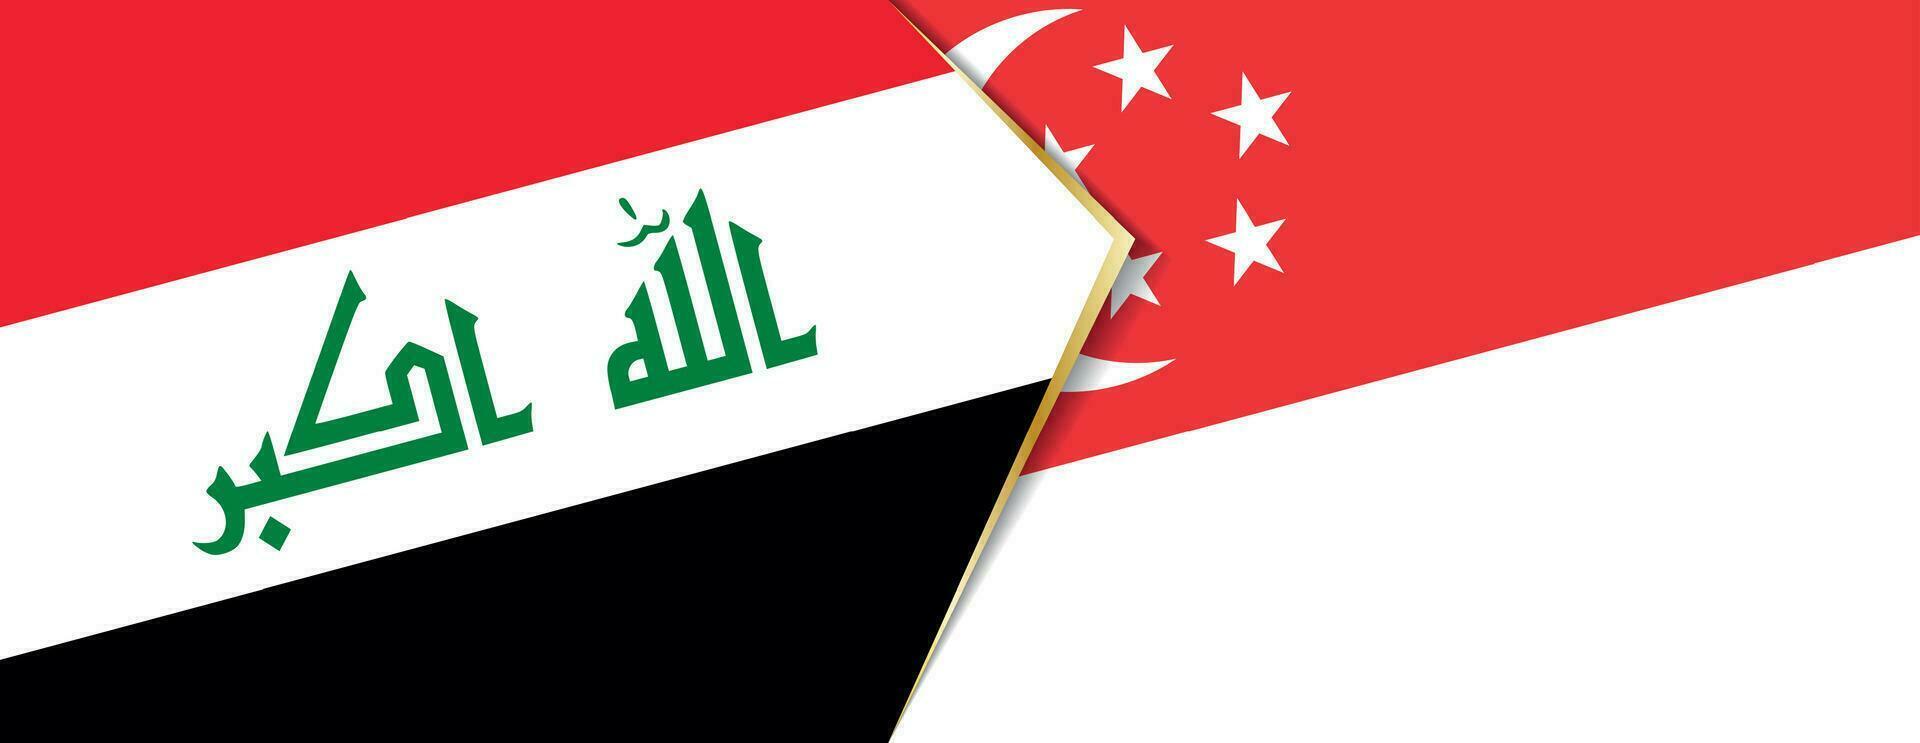 Irak et Singapour drapeaux, deux vecteur drapeaux.